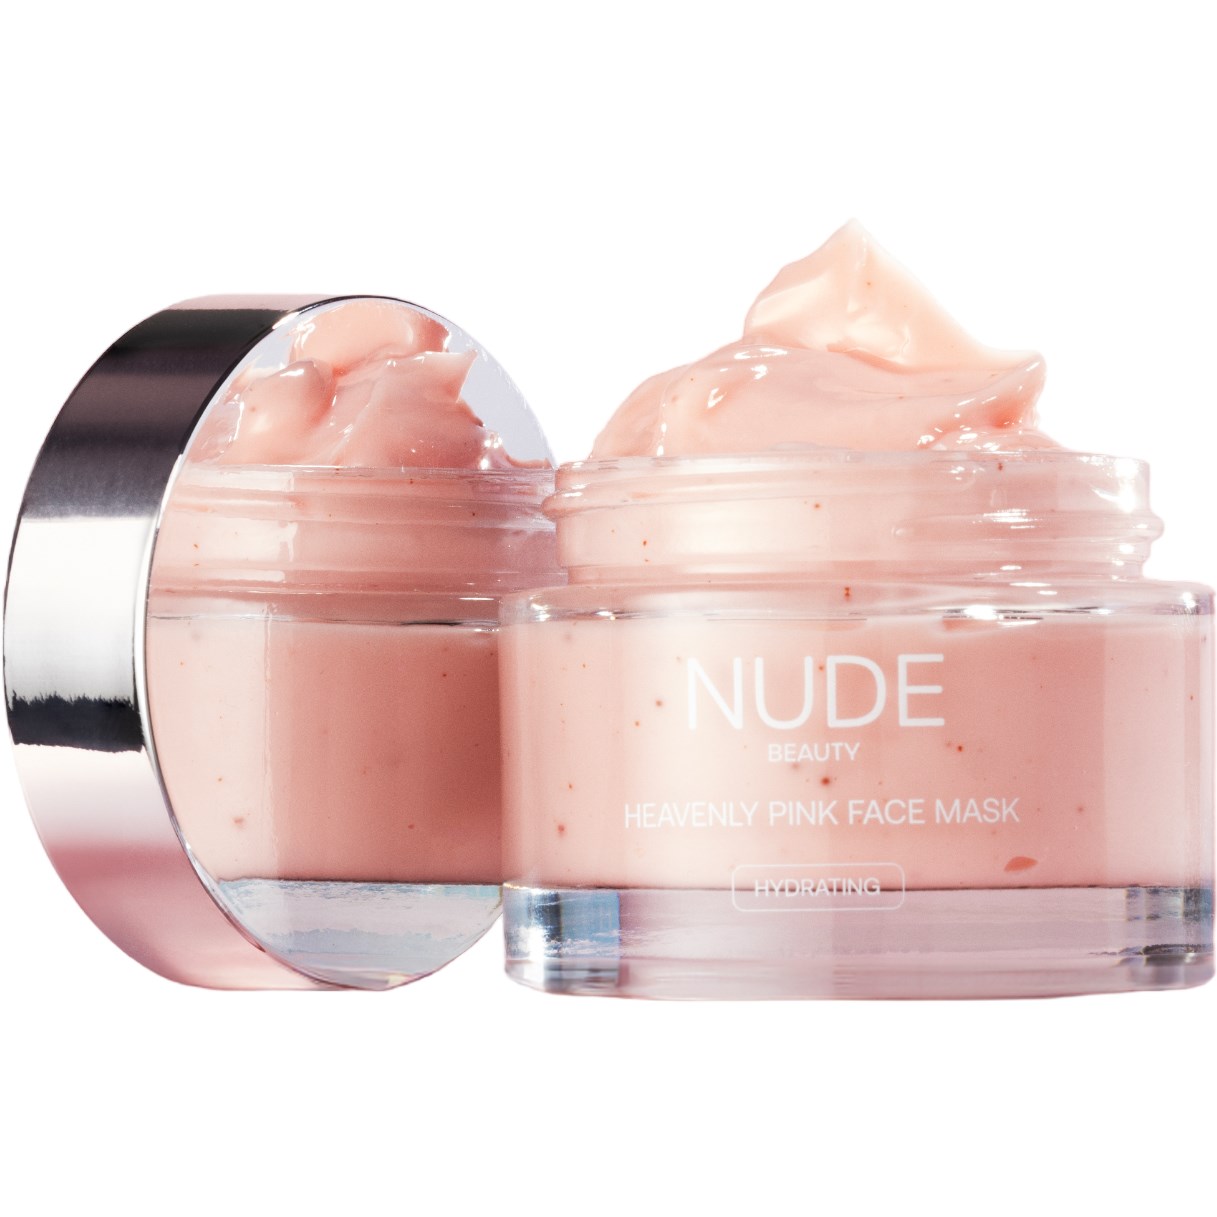 Bilde av Nude Beauty Heavenly Pink Face Mask